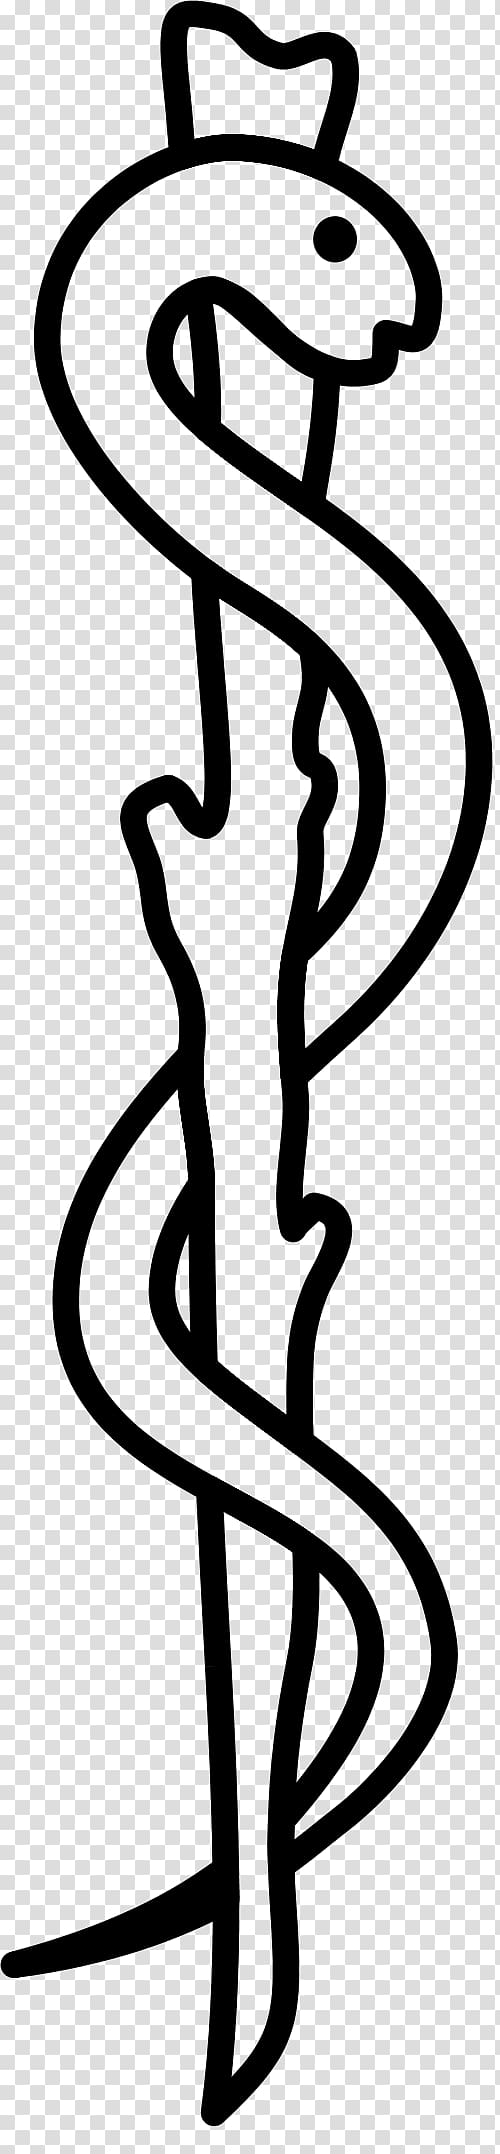 Hermes Rod of Asclepius Medicine Symbol, cancer symbol transparent background PNG clipart